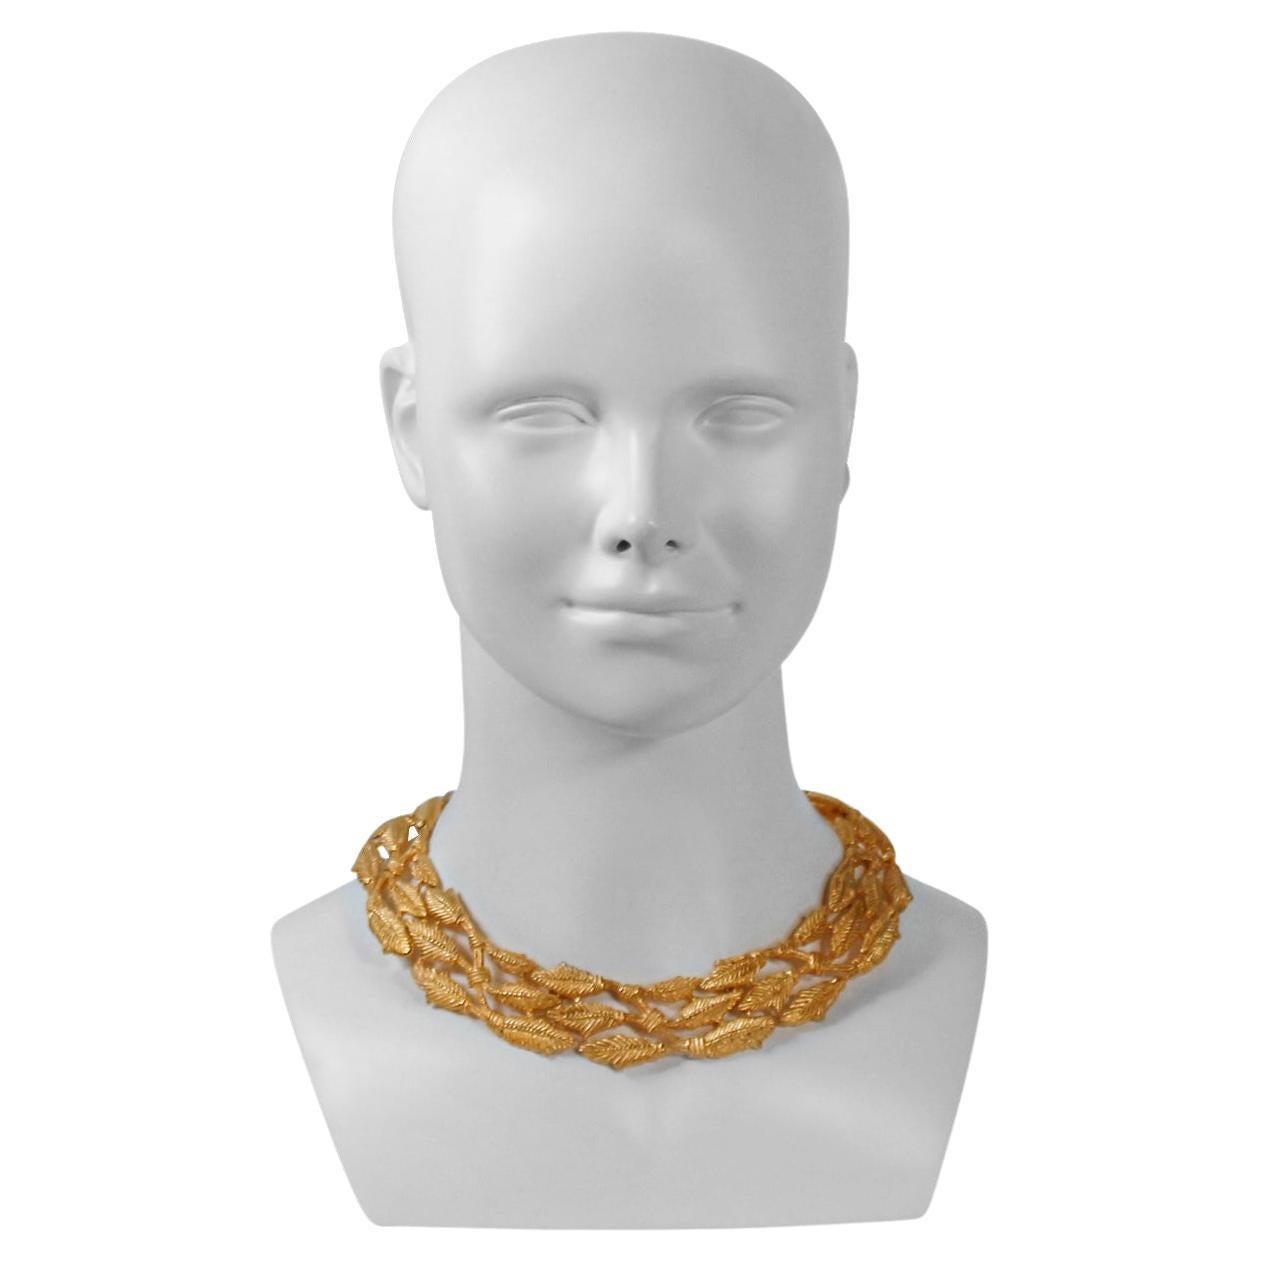 Vintage Givenchy Gold Halskette mit Weizenmuster in drei Reihen. Texturiert.  Es gibt passende Reifen auf meiner Website. Weizen ist das Symbol des Überflusses.  Diese Halskette ist in natura noch viel prächtiger. 
Mit diesen oder anderen goldenen